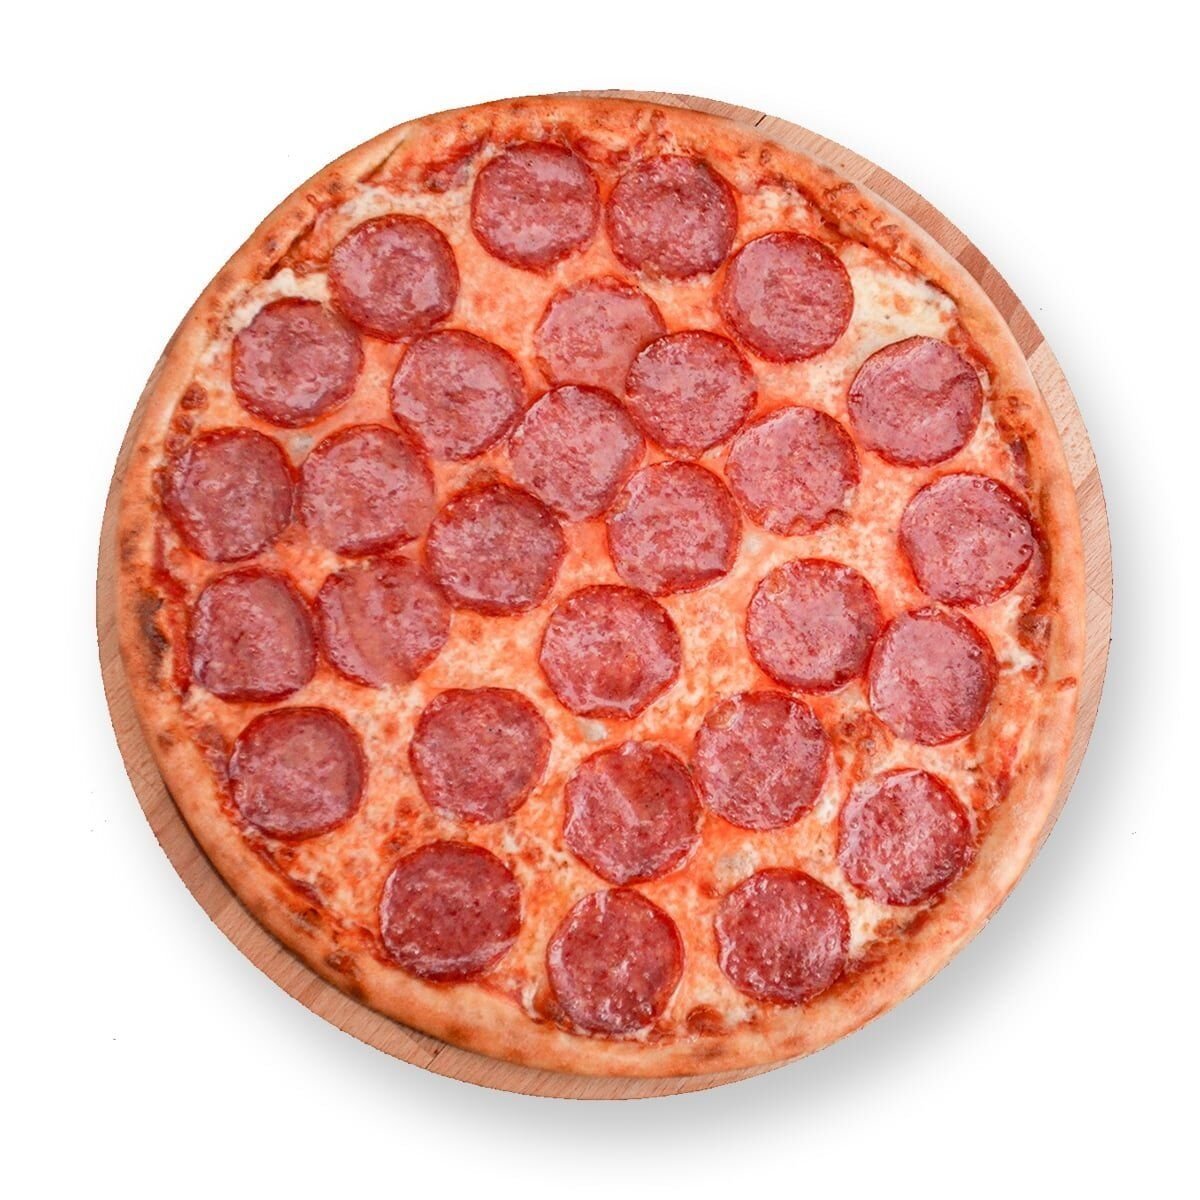 фотка пиццы пепперони фото 69